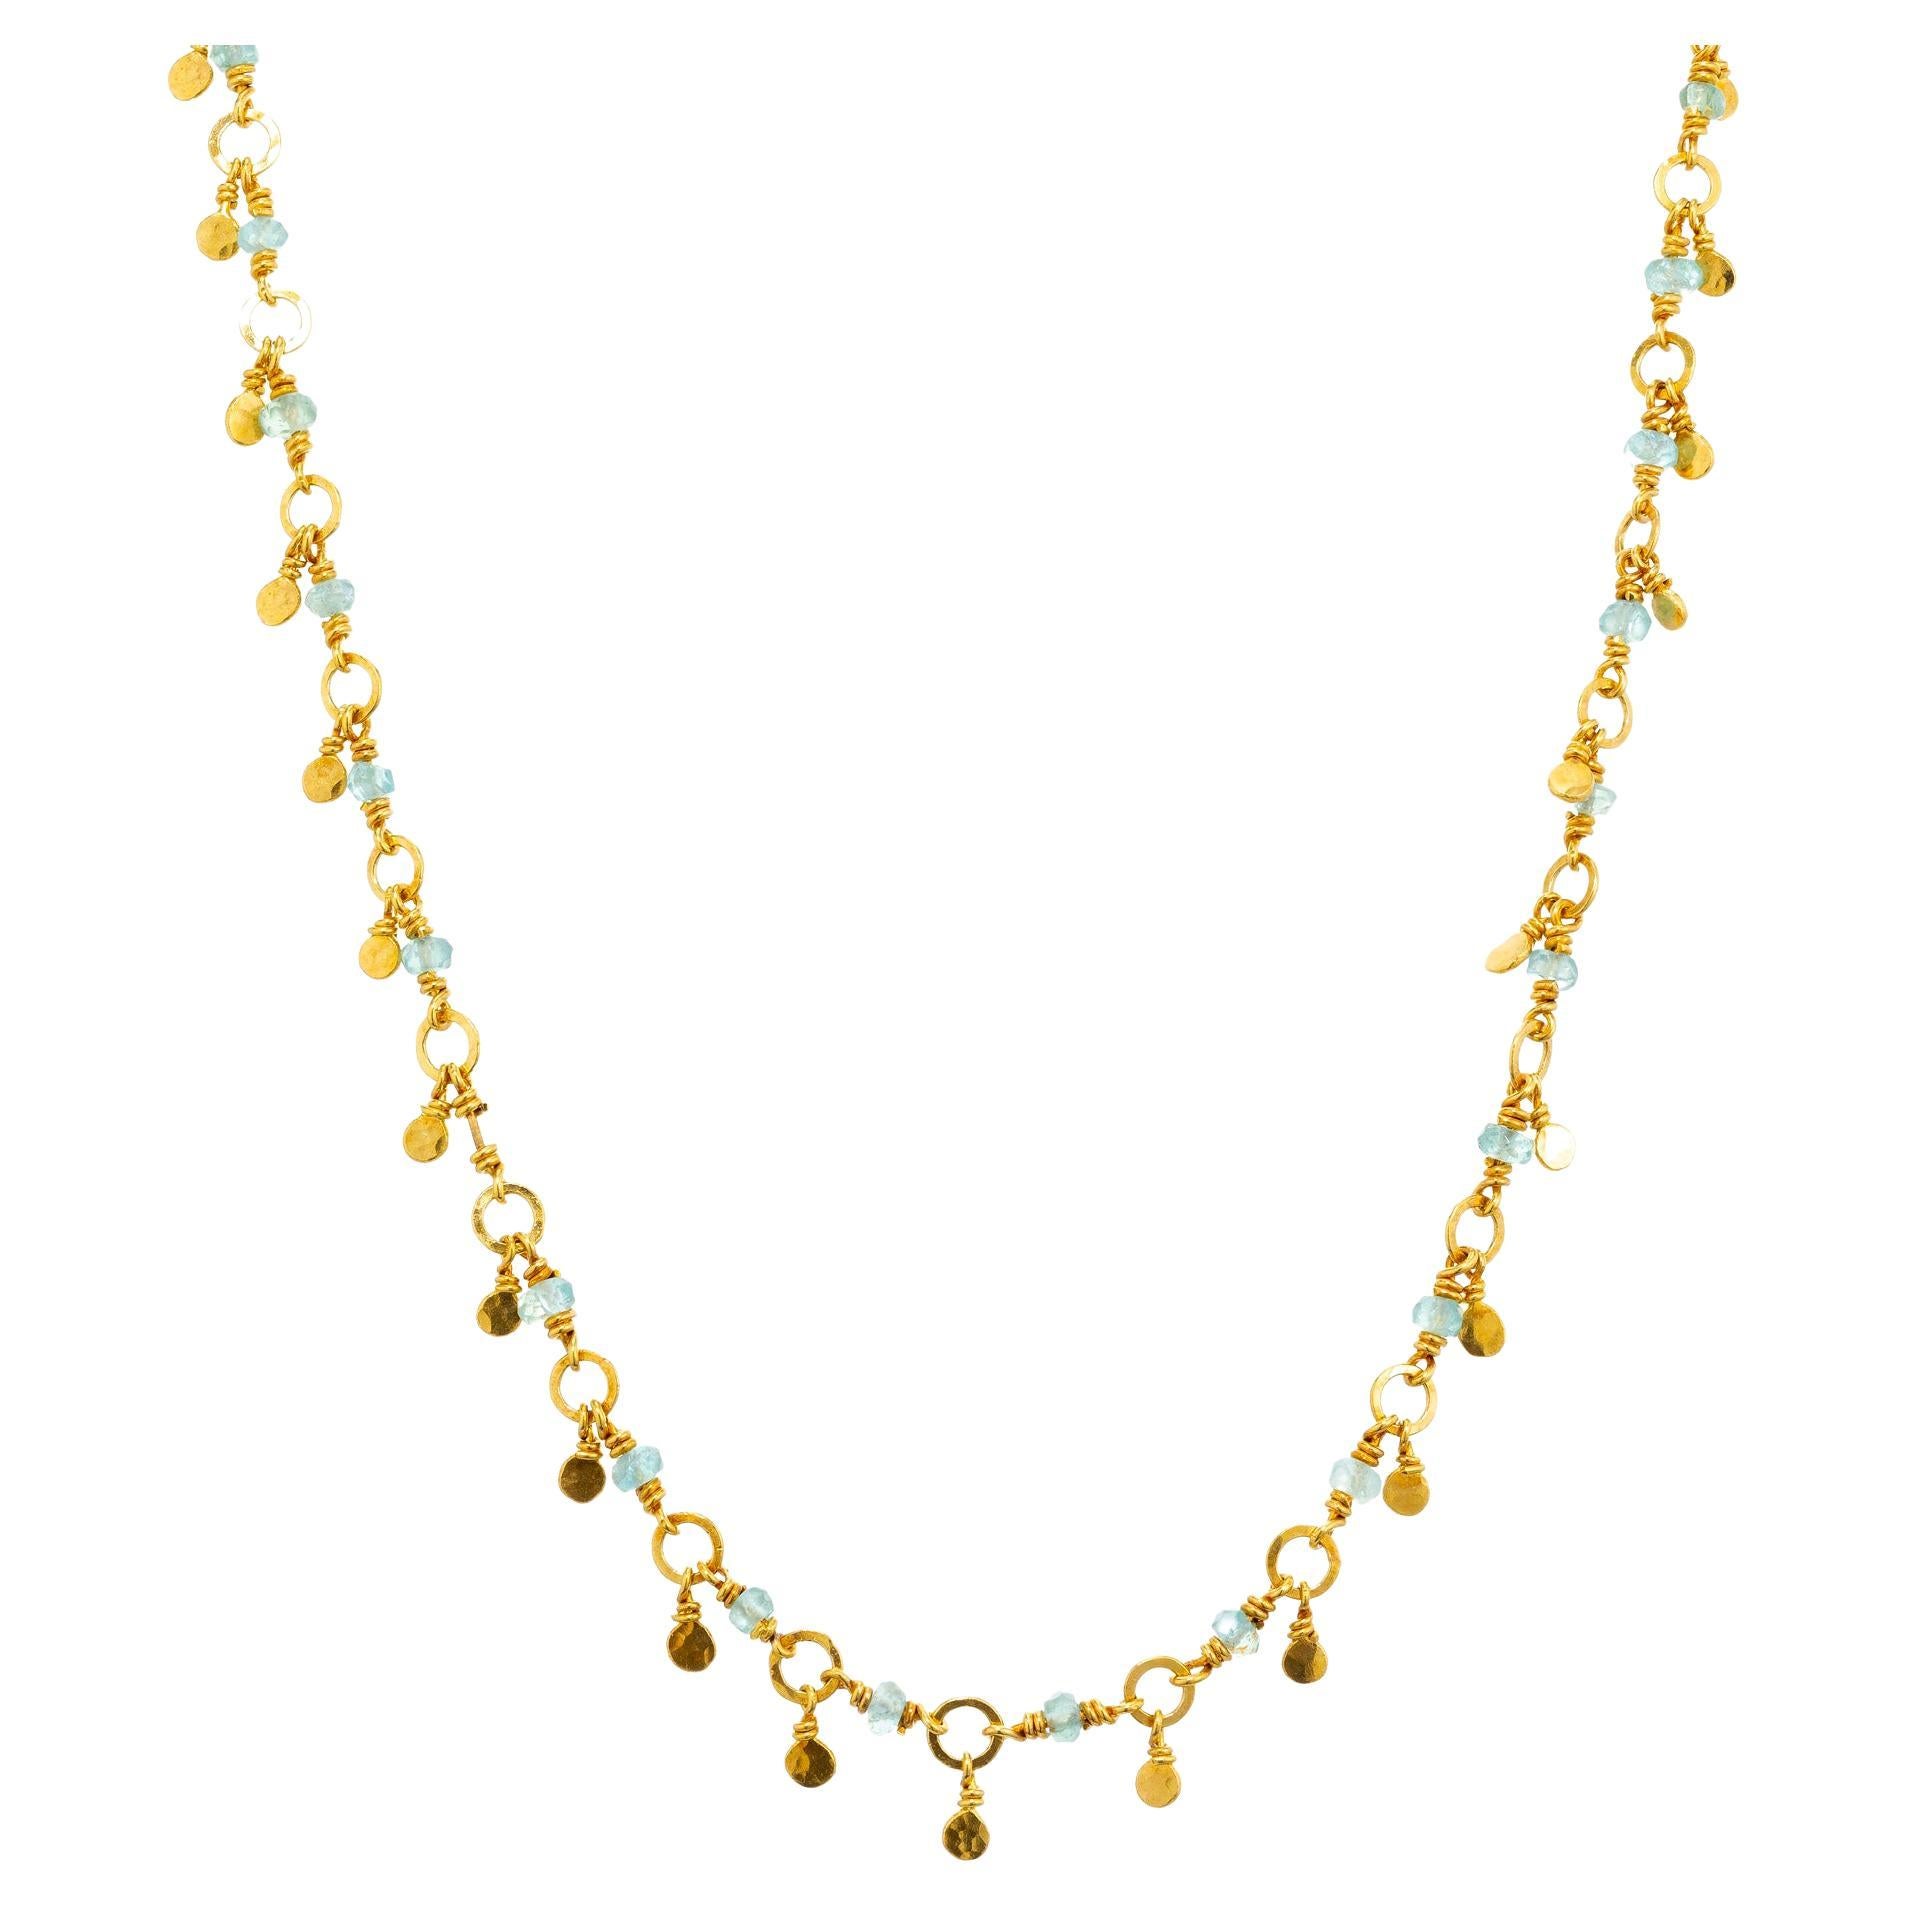 Halskette mit Smaragd, Gold, Rondell-Perlen, 22K Gold